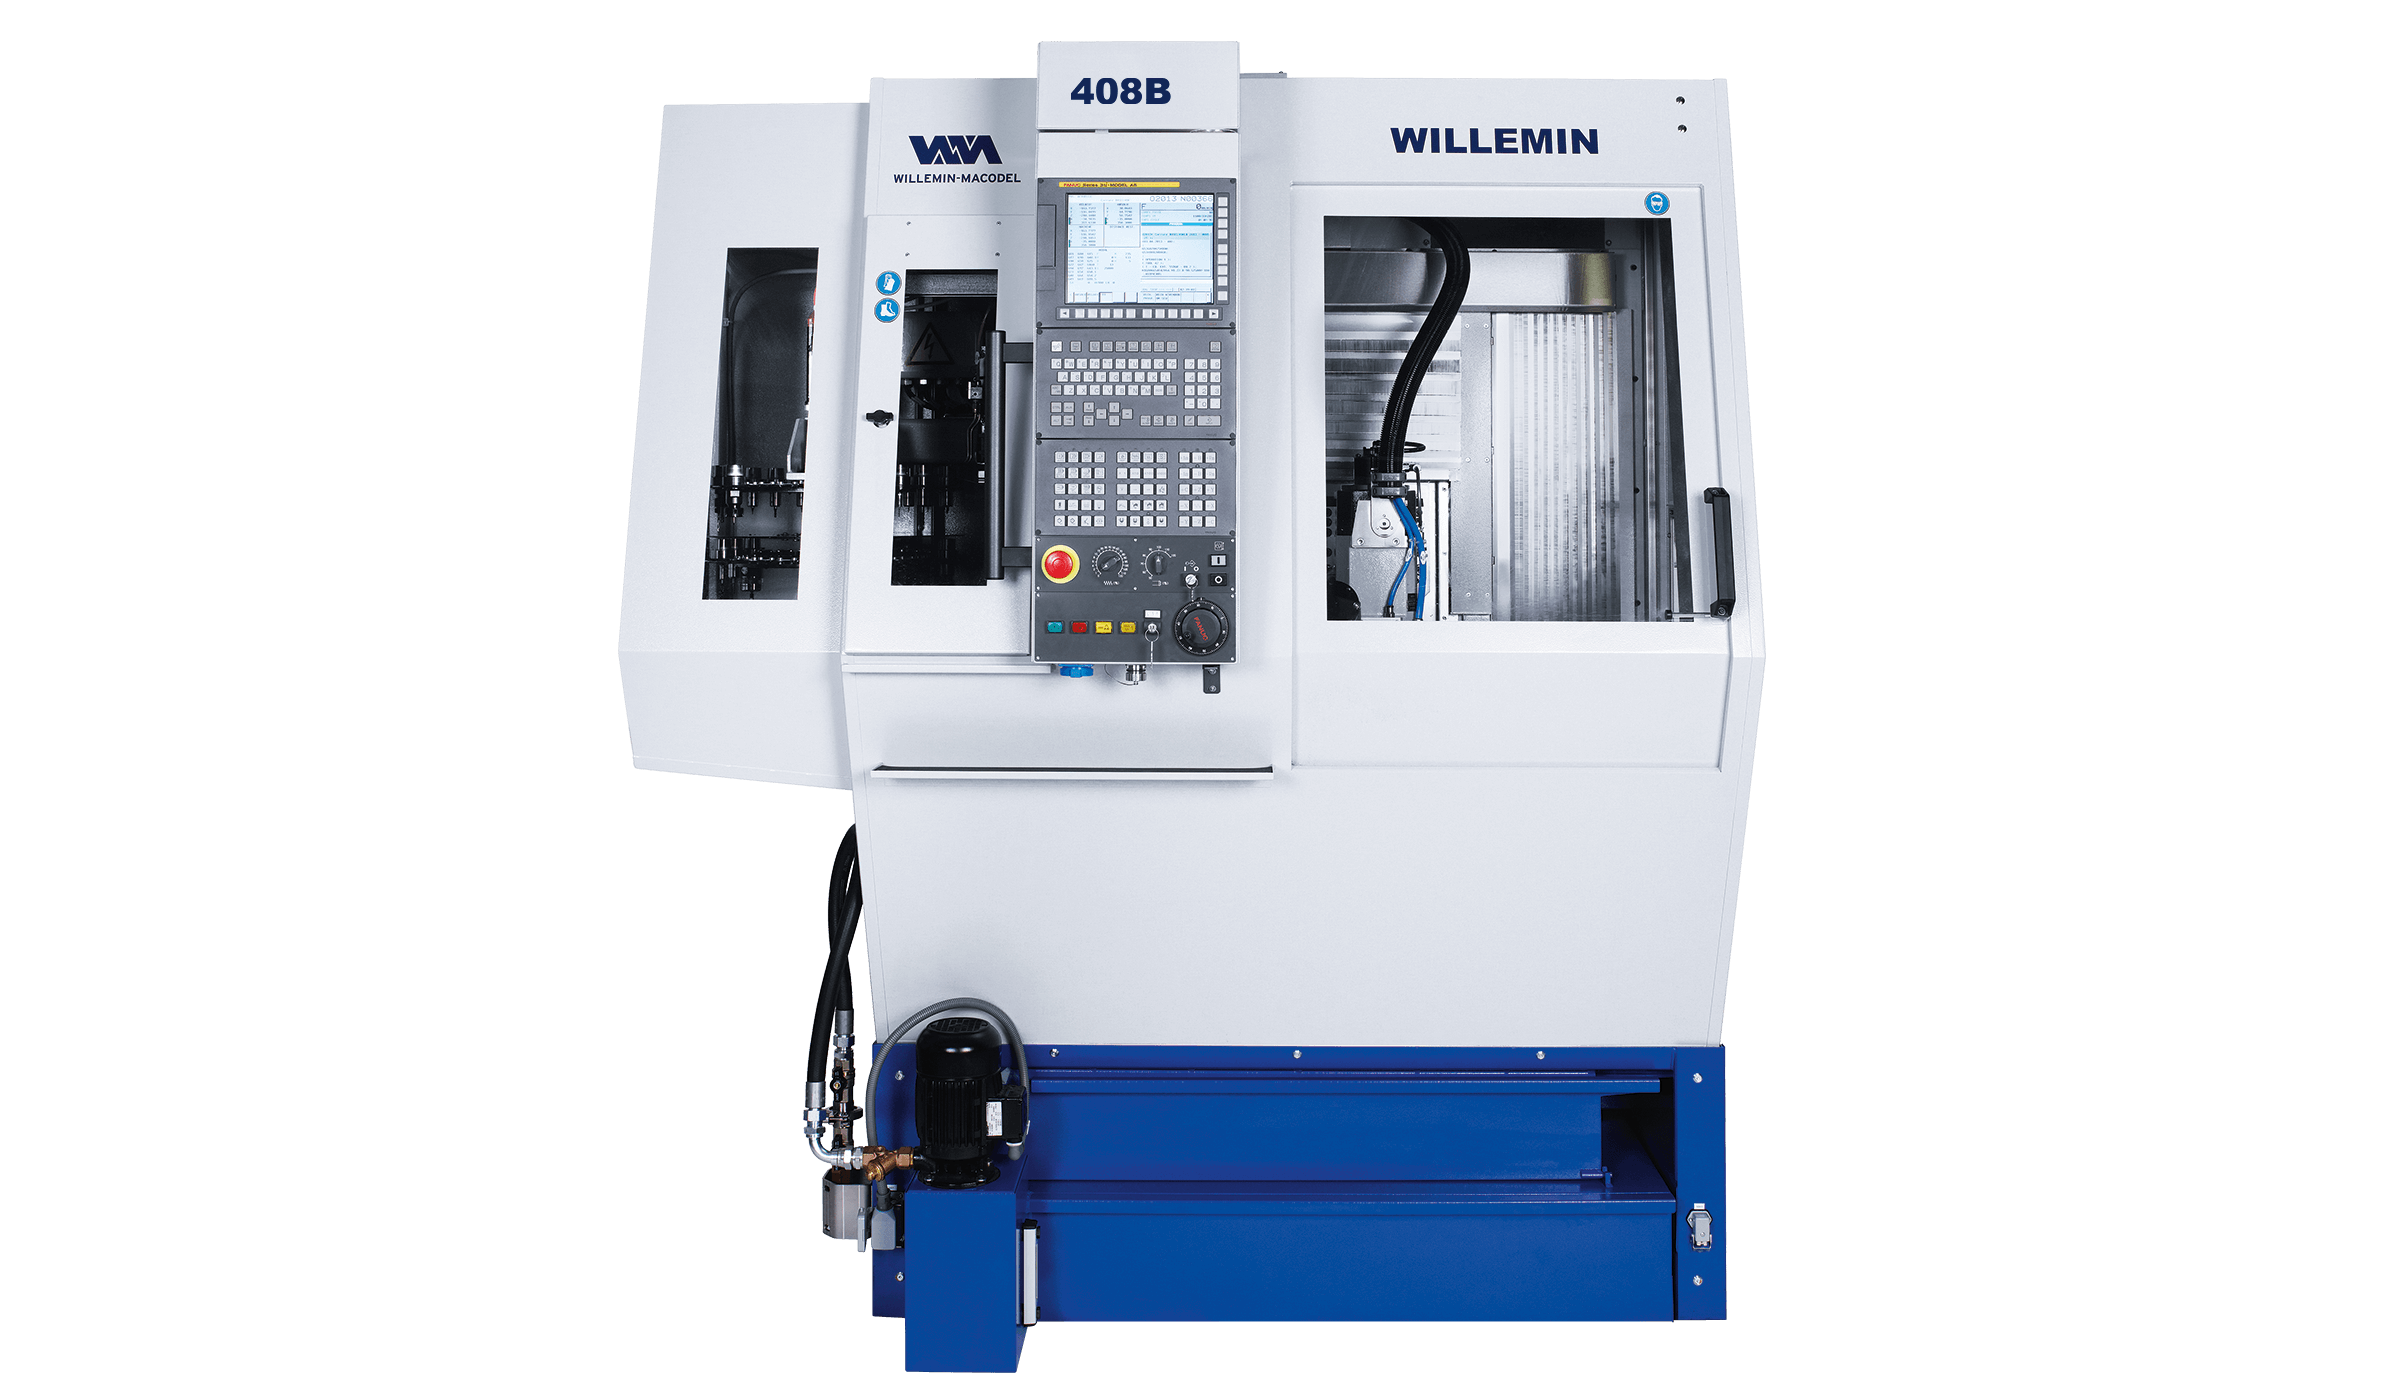 willemin-macodel machining center - serie 40 - 408B